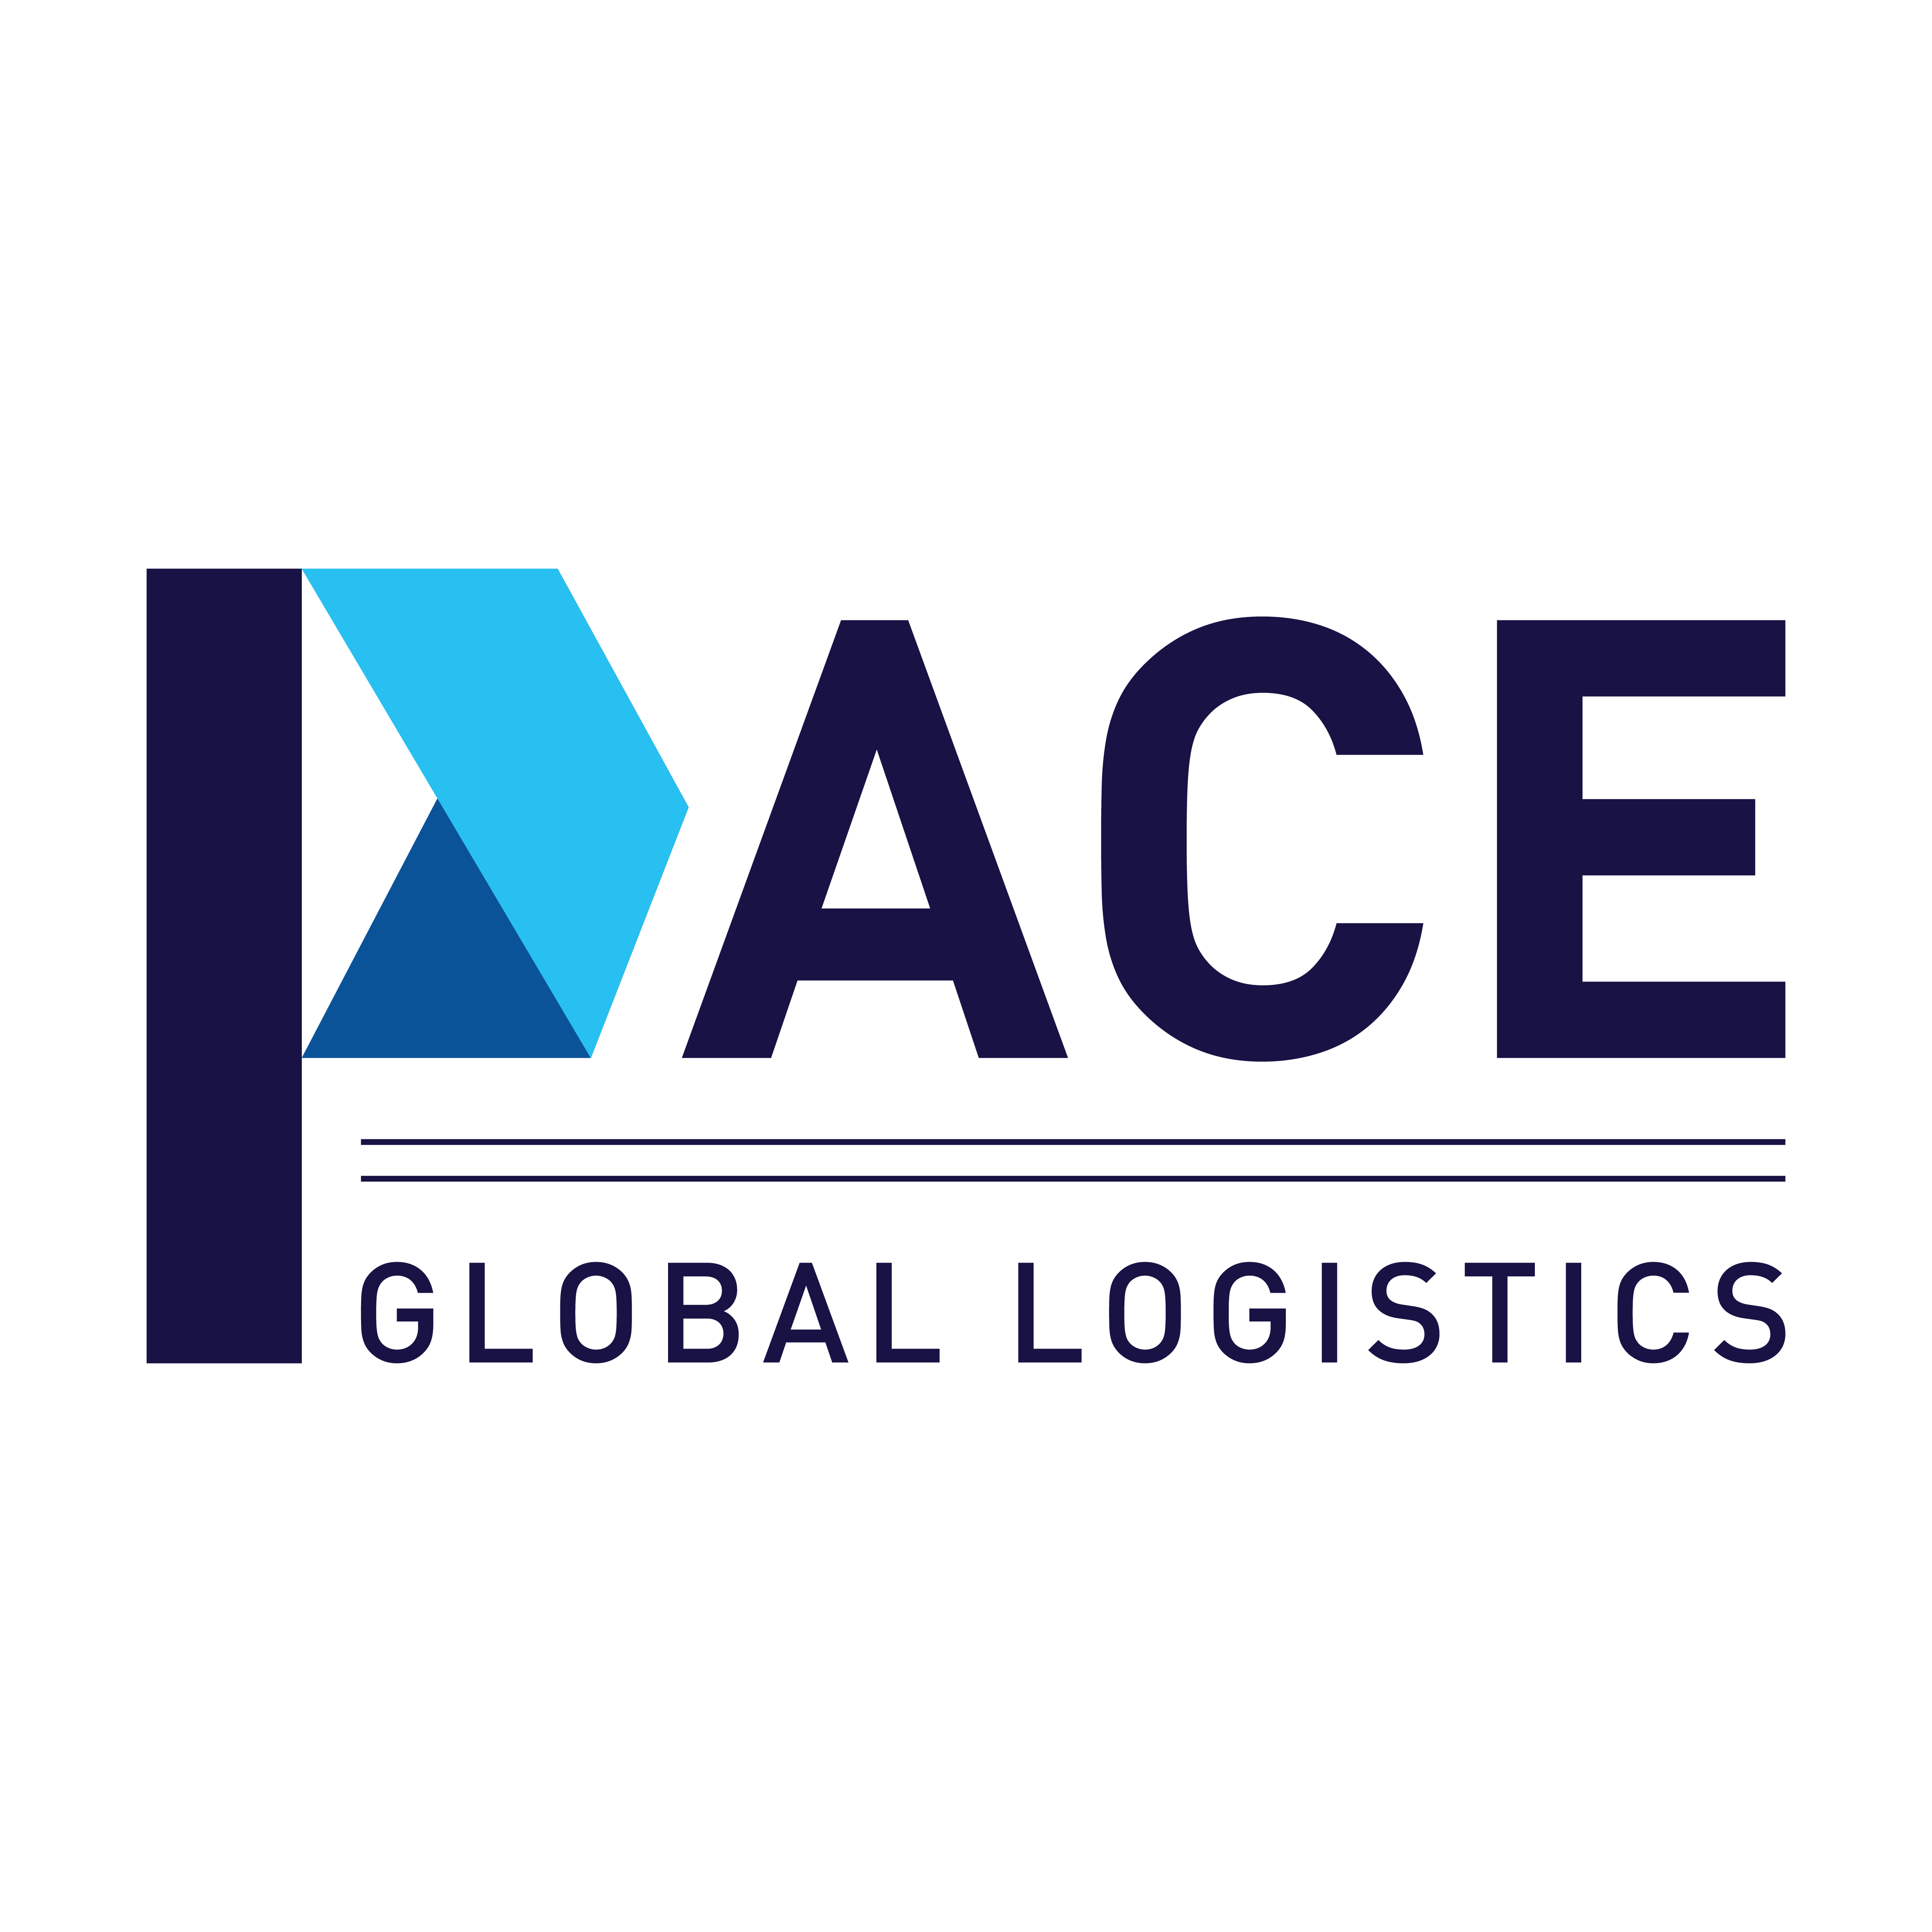 PACE GLOBAL LOGISTICS LLC